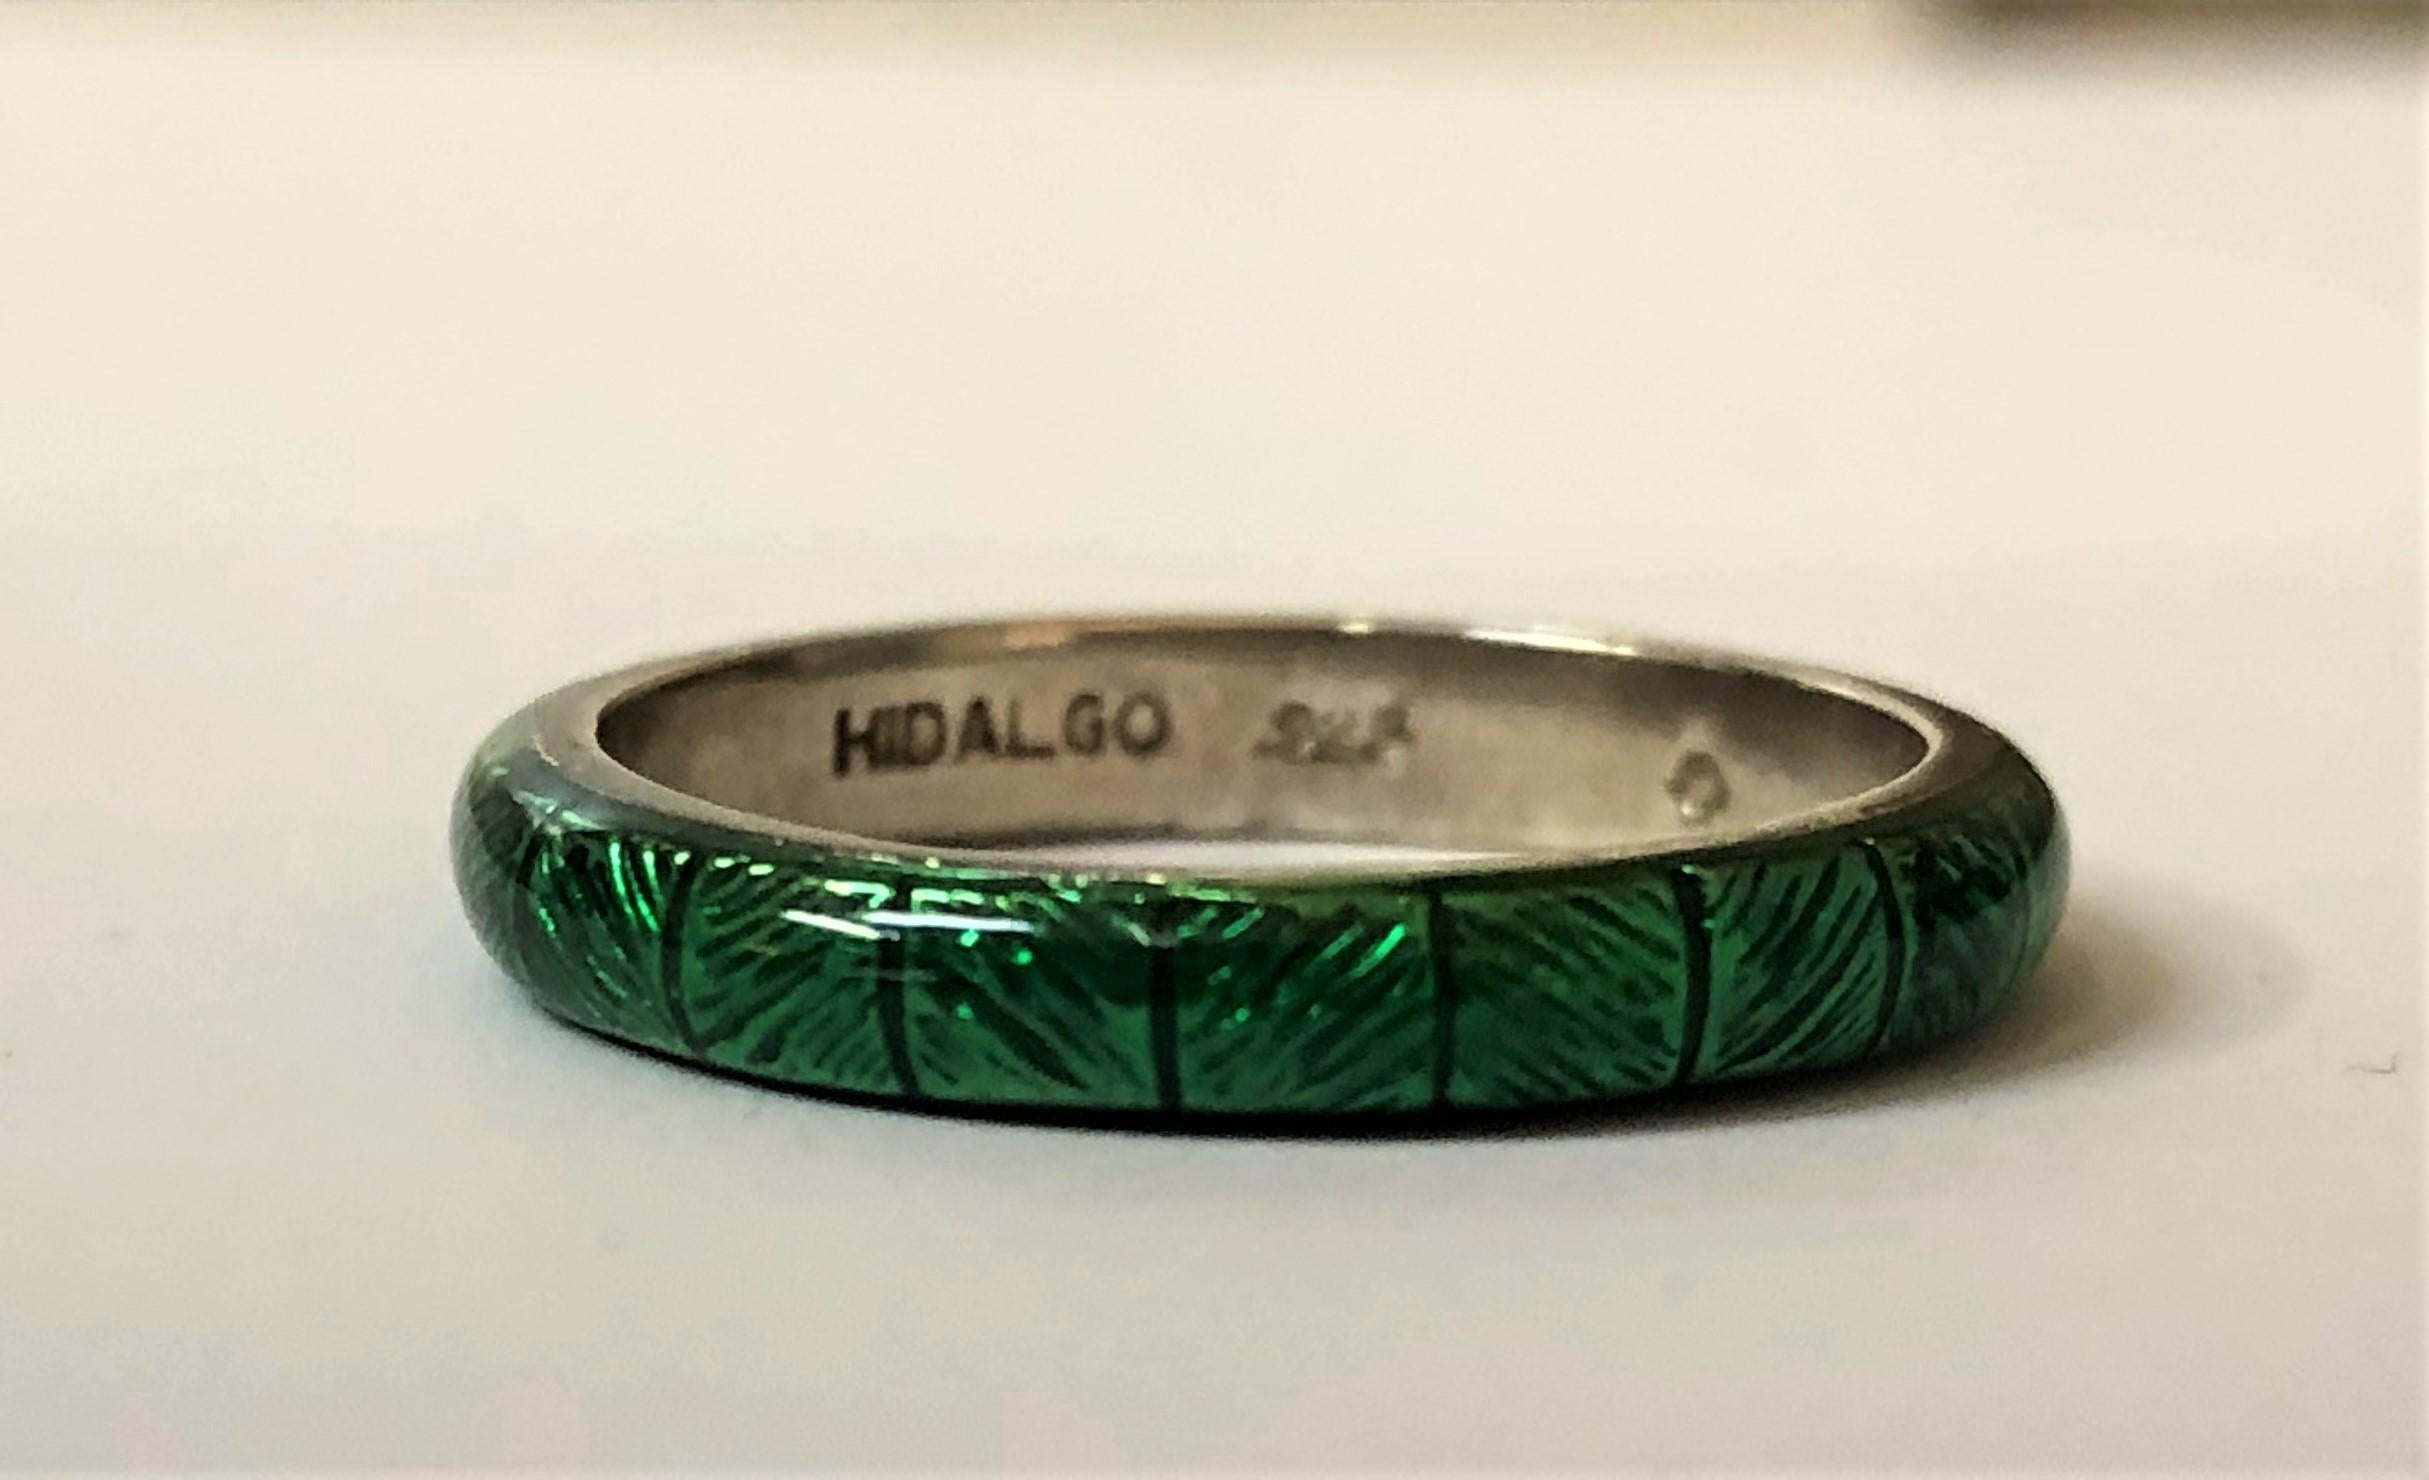 Grüner Emaille-Ring von Hidalgo für Damen oder Herren